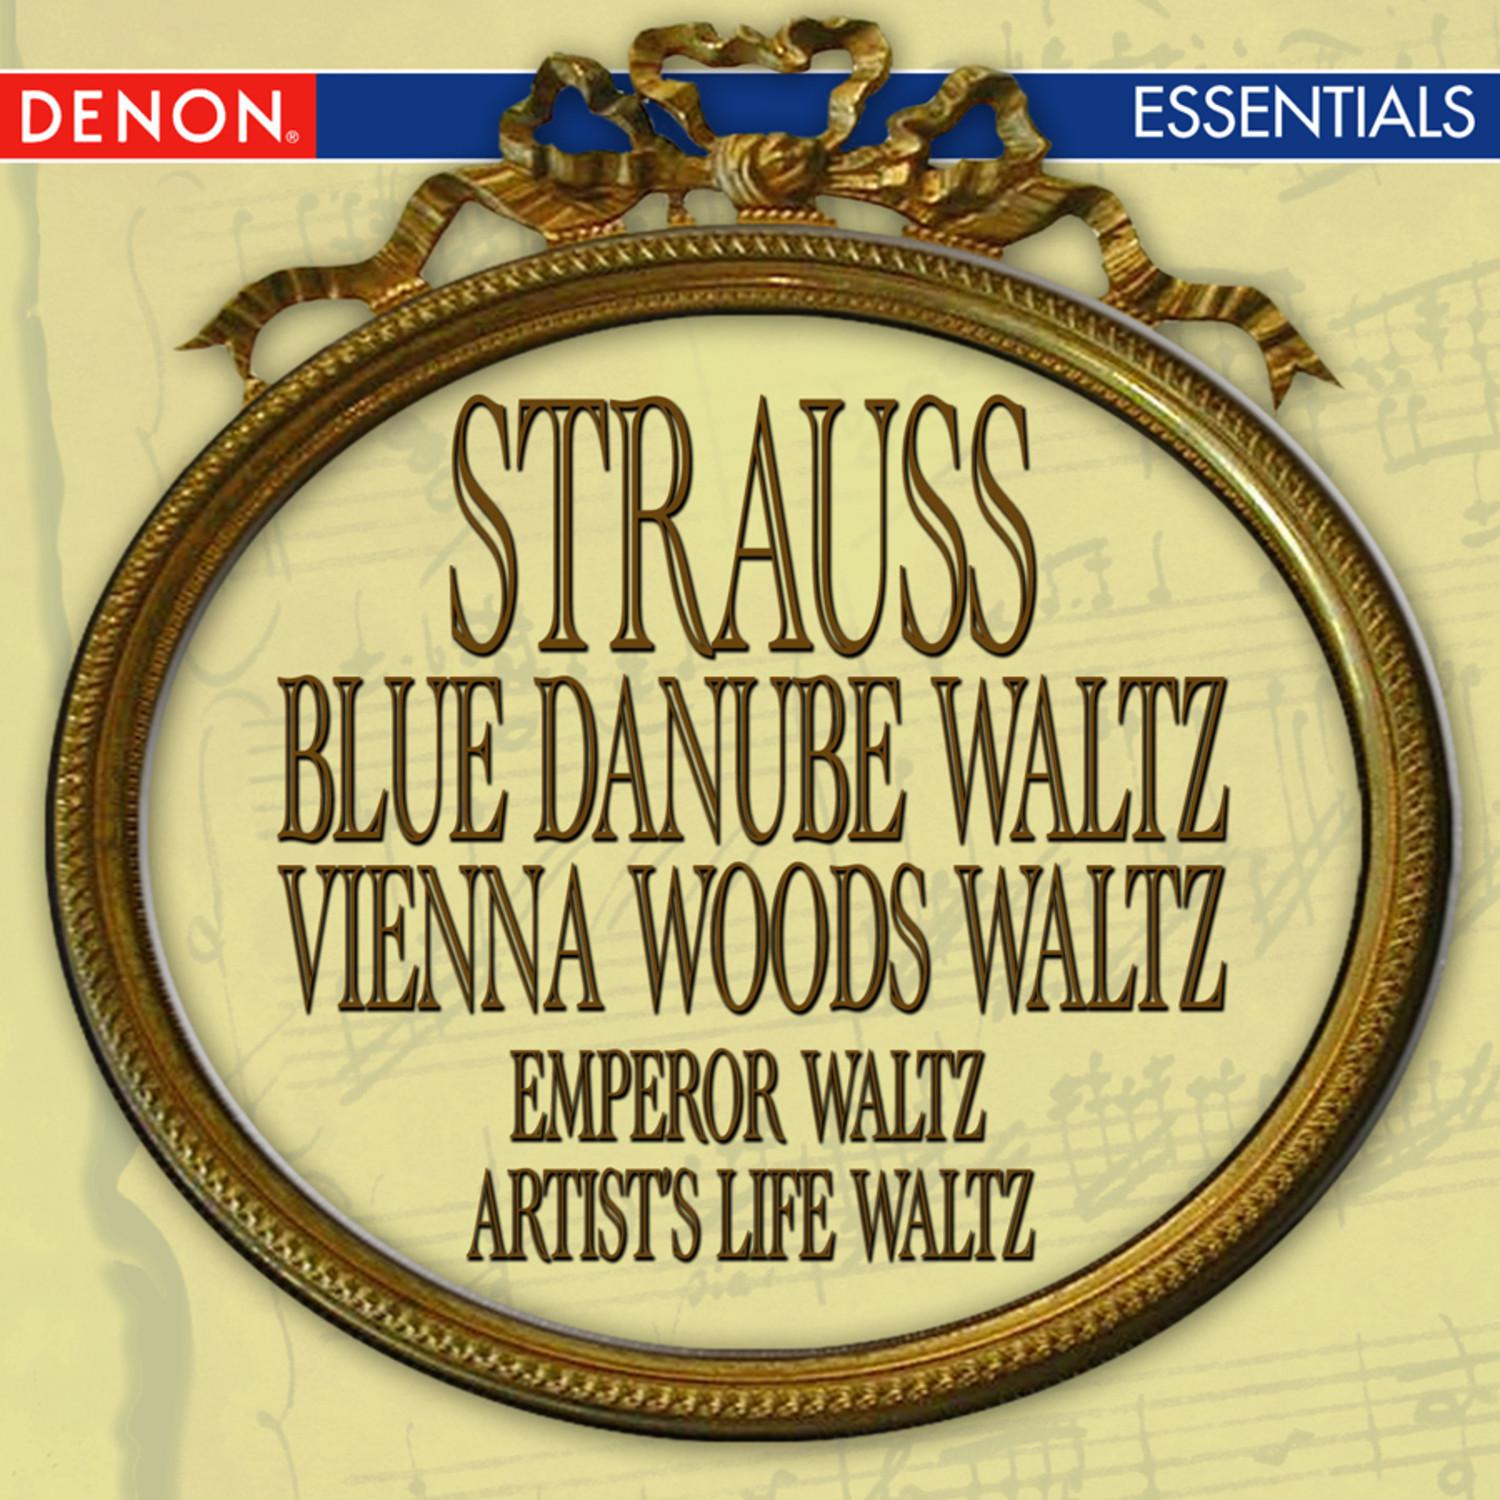 Strauss: Blue Danube Waltz - Vienna Woods Waltz - Emperor Waltz - Artist's Life Waltz